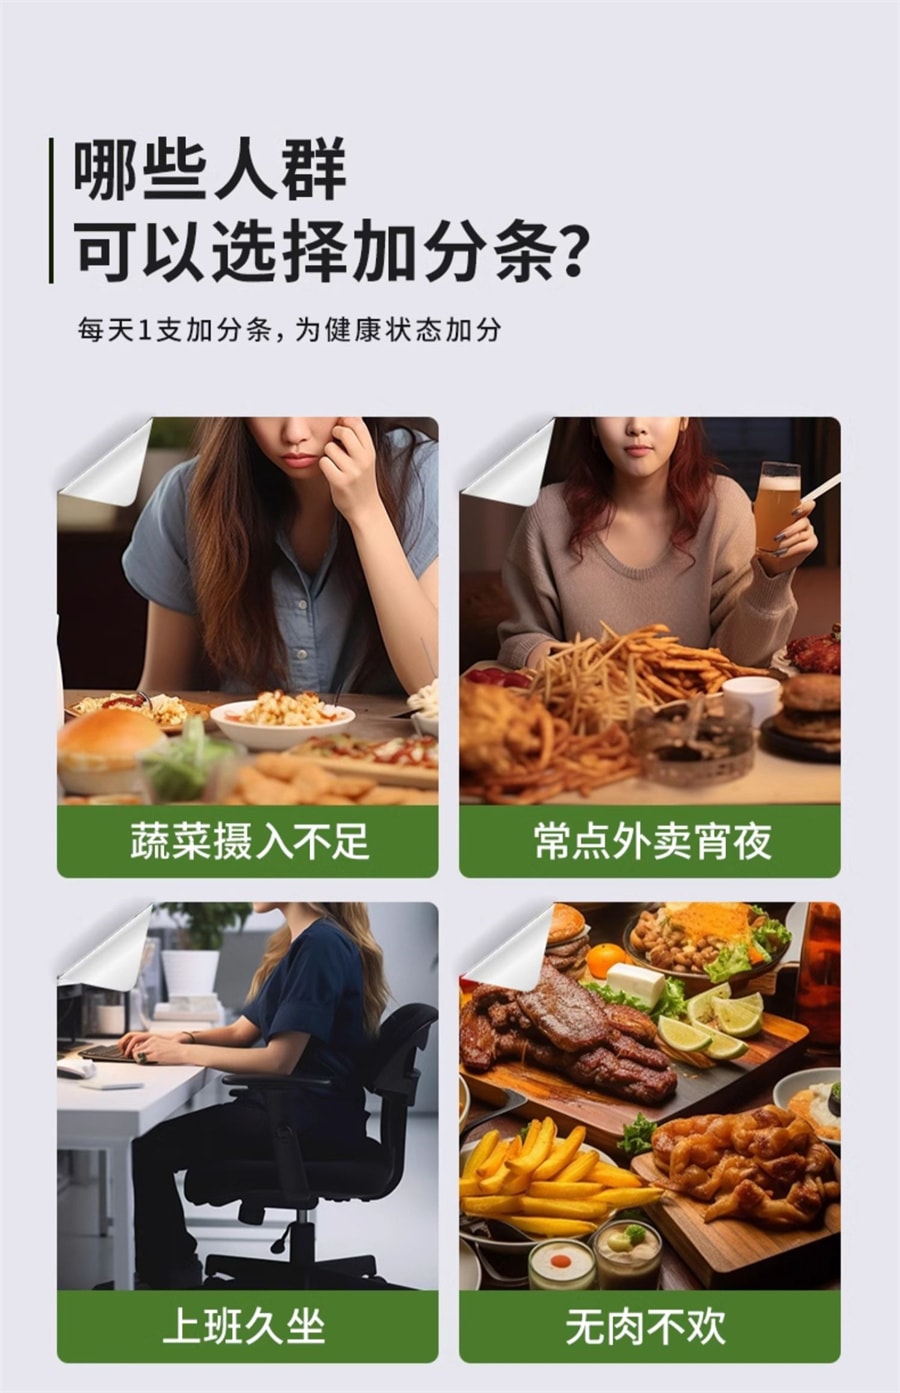 【中國直郵】王飽飽 羽衣甘藍粉膳食纖維青汁代蔬菜粉 105g/盒